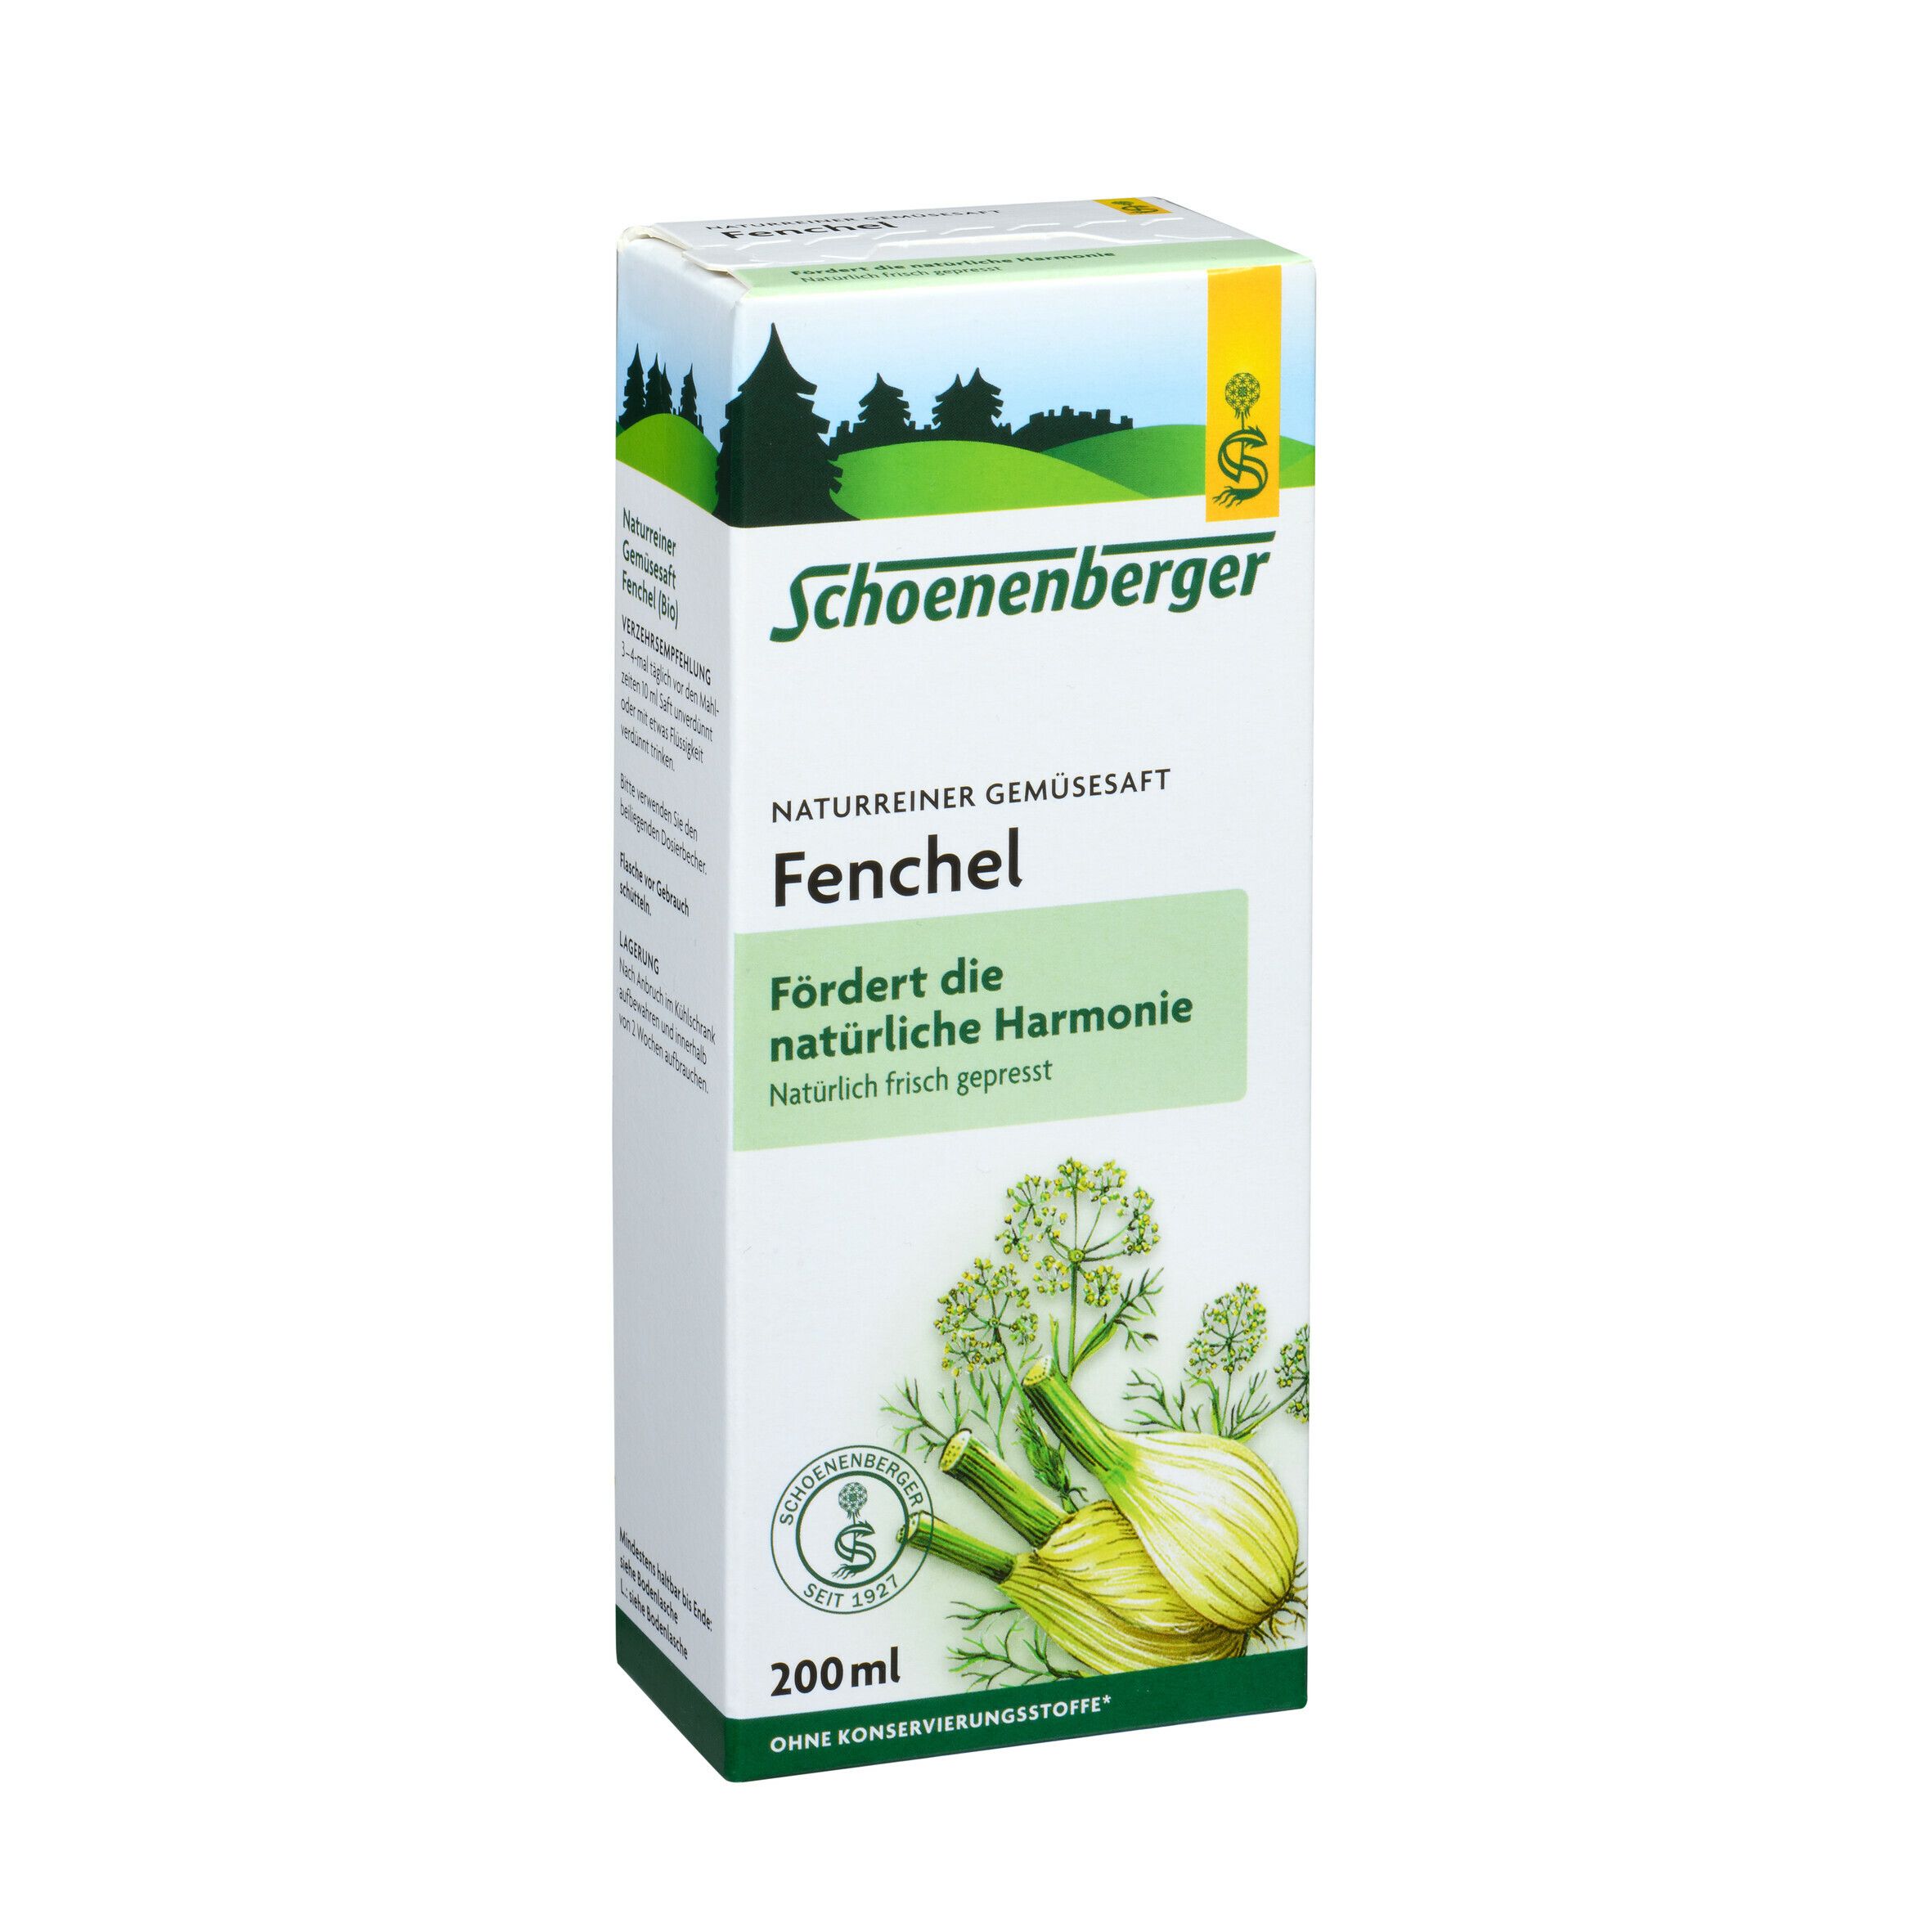 Schoenenberger® naturreiner Gemüsesaft Fenchel